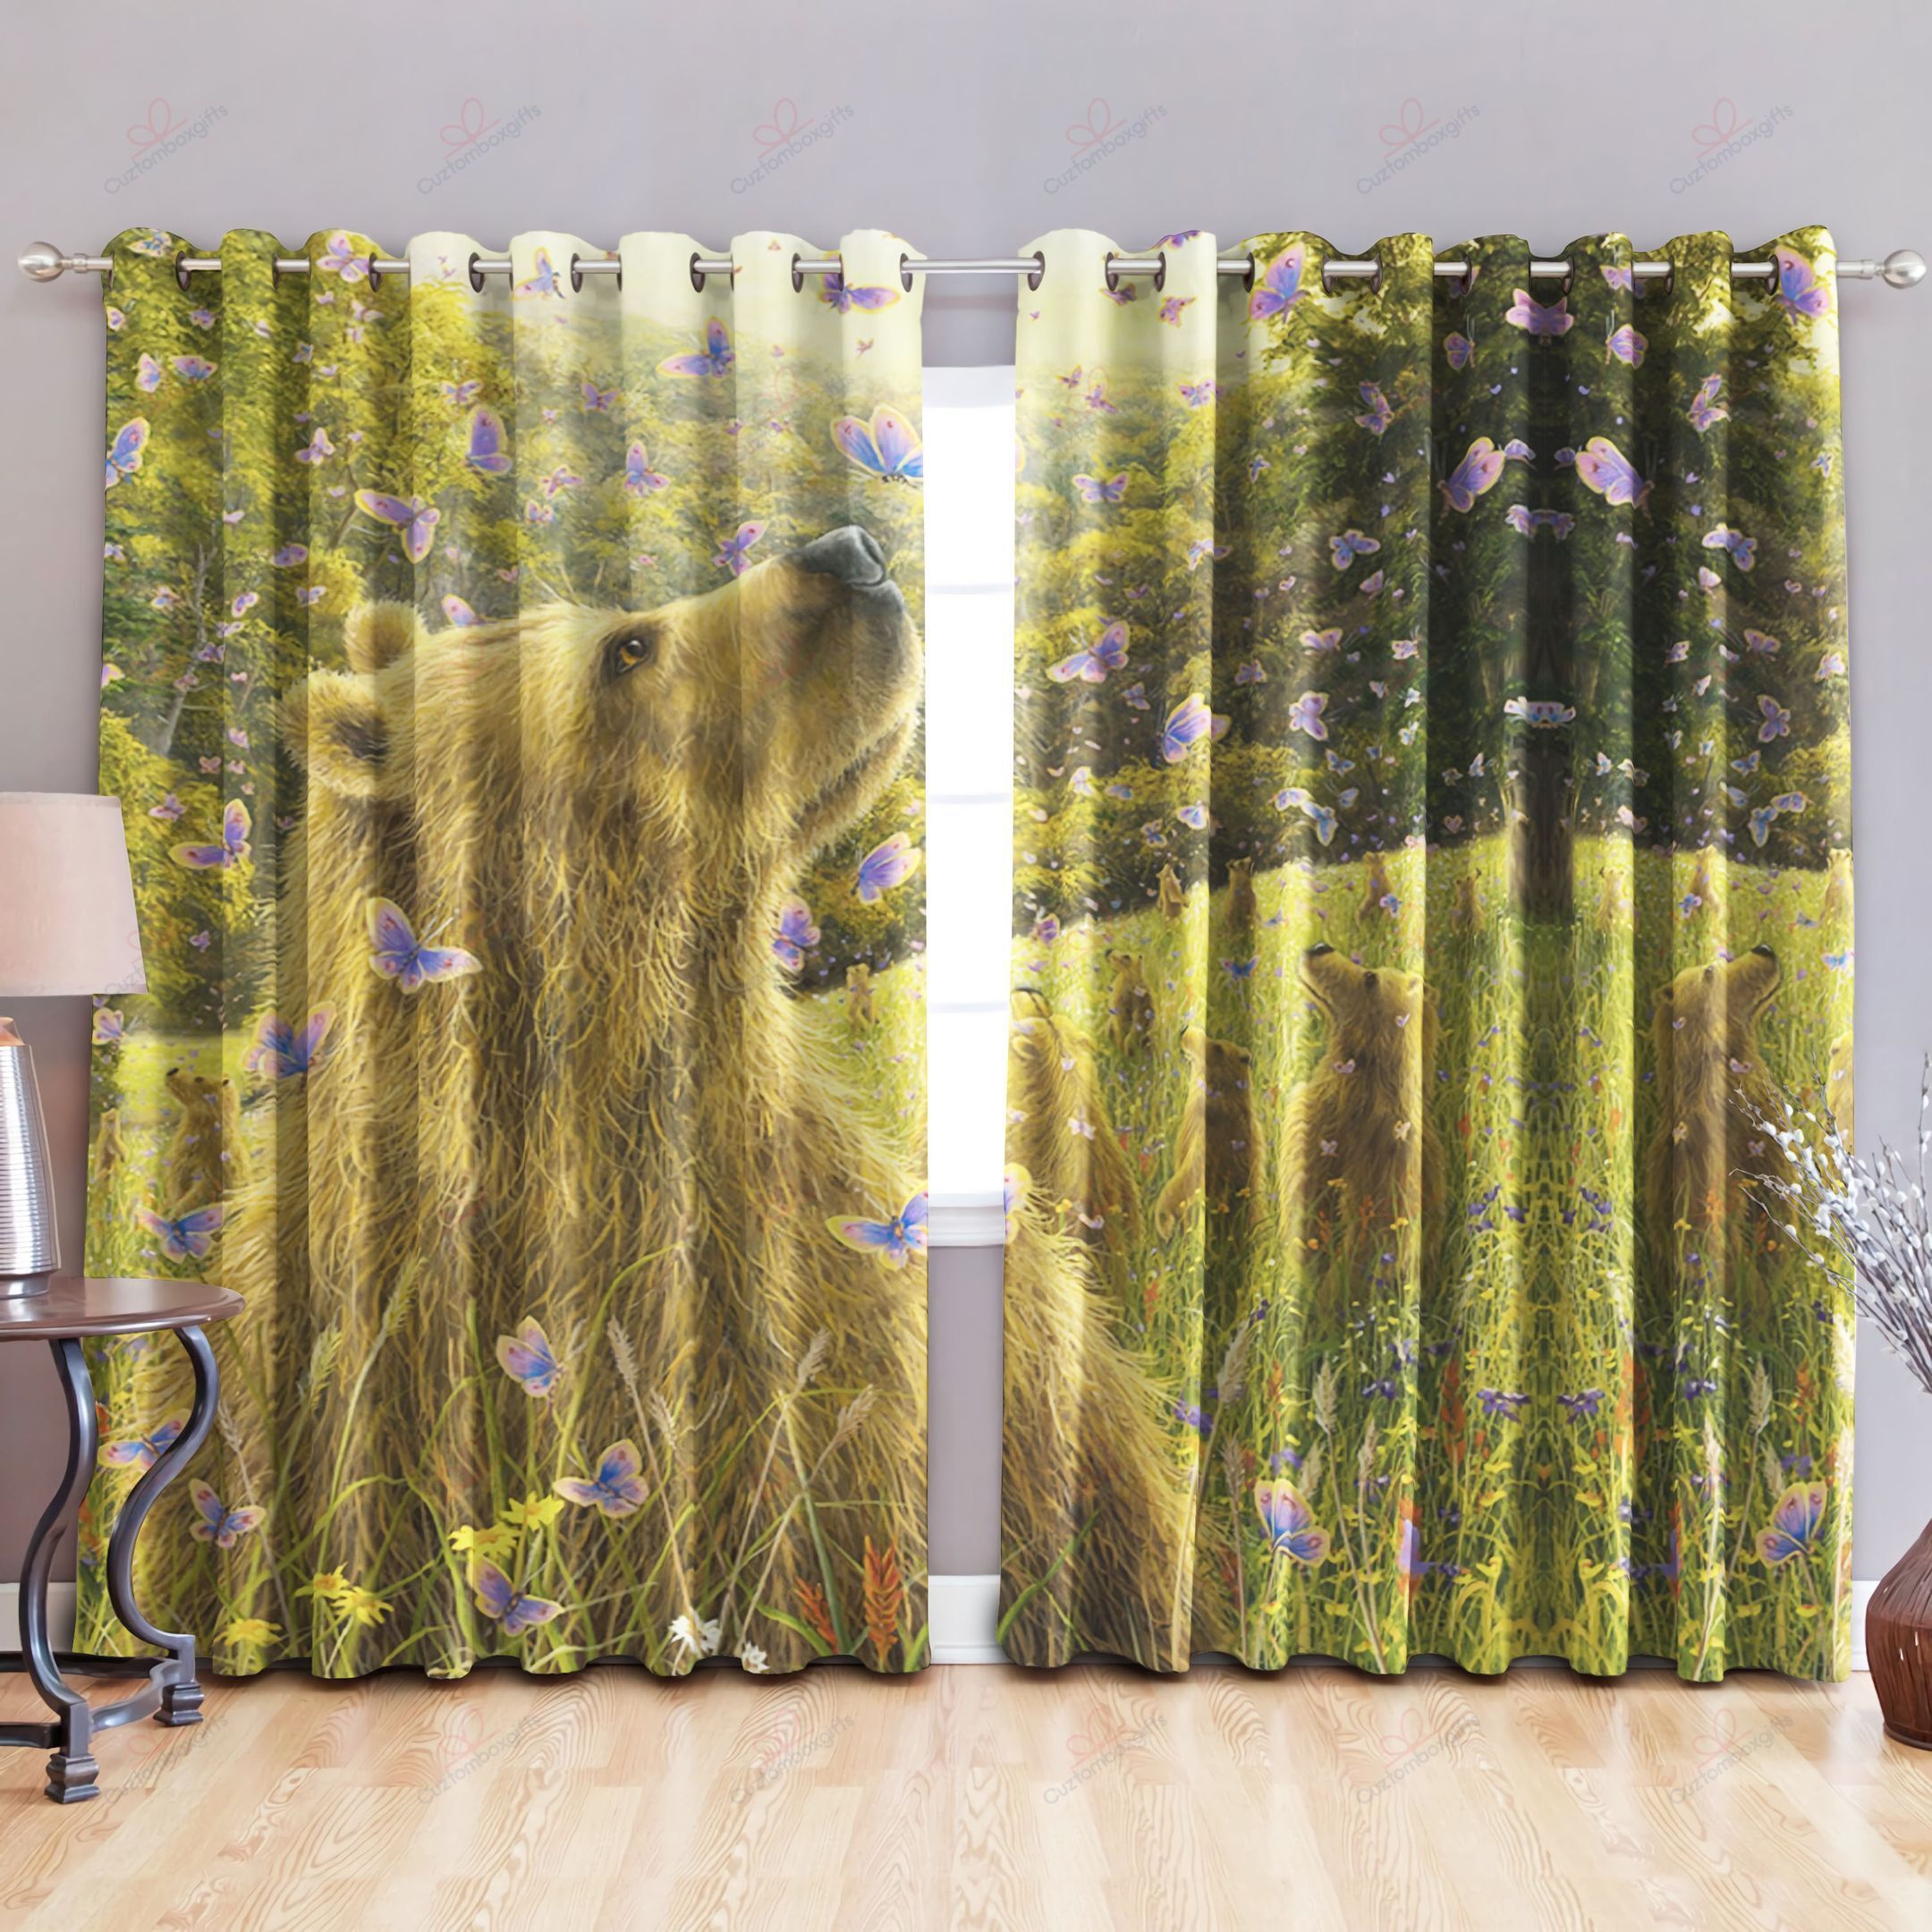 Golden Bear Butterflies Printed Window Curtain Home Decor